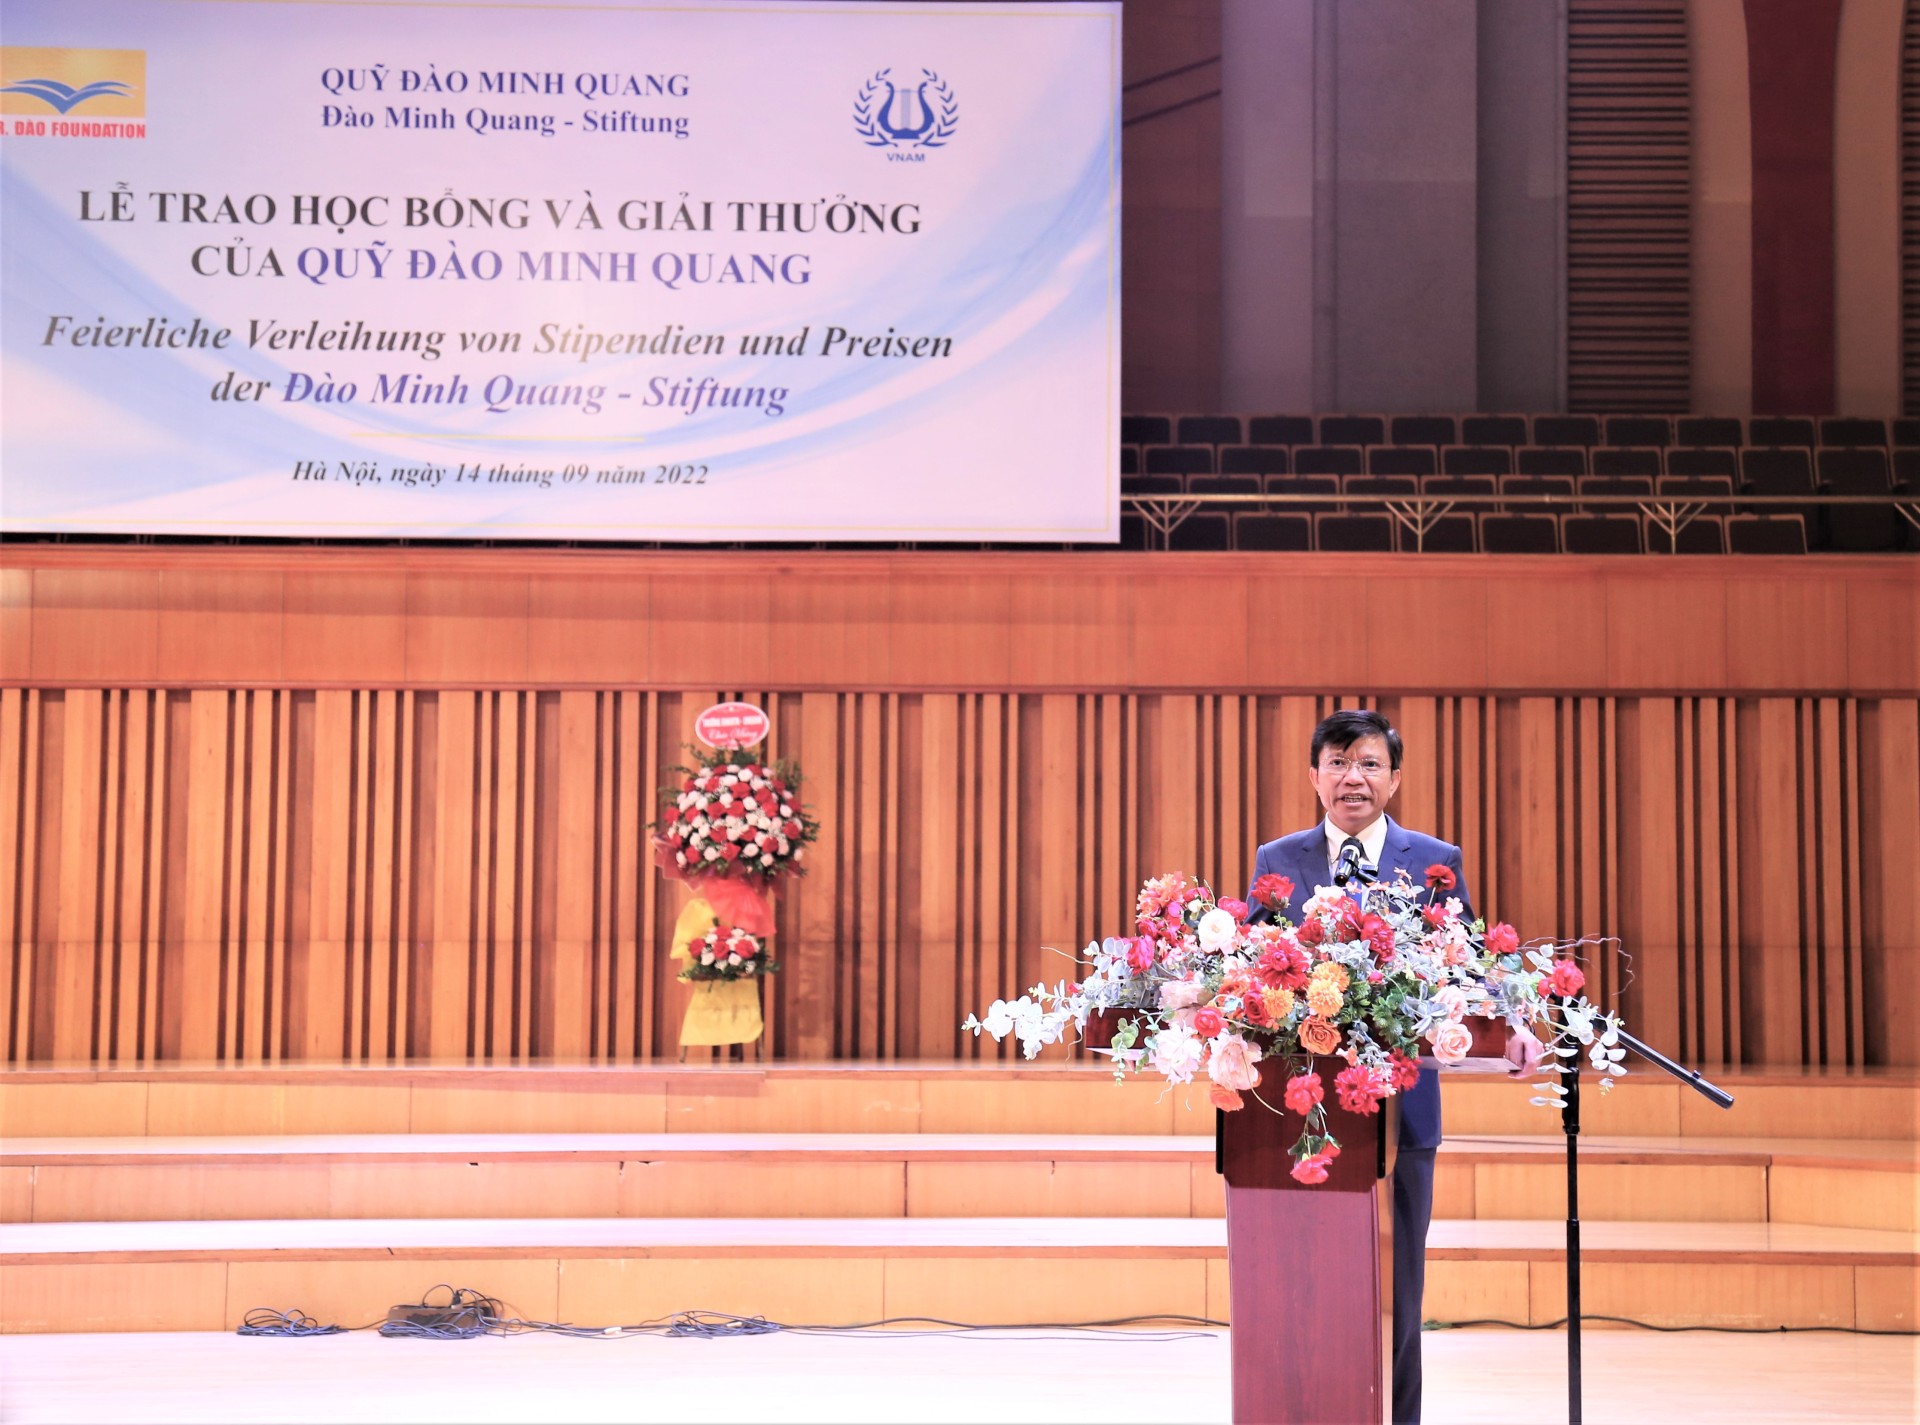 Lễ trao học bổng Đào Minh Quang: trao gửi niềm tin và tình yêu với đất nước, con người, văn hóa Việt Nam cho thế hệ trẻ